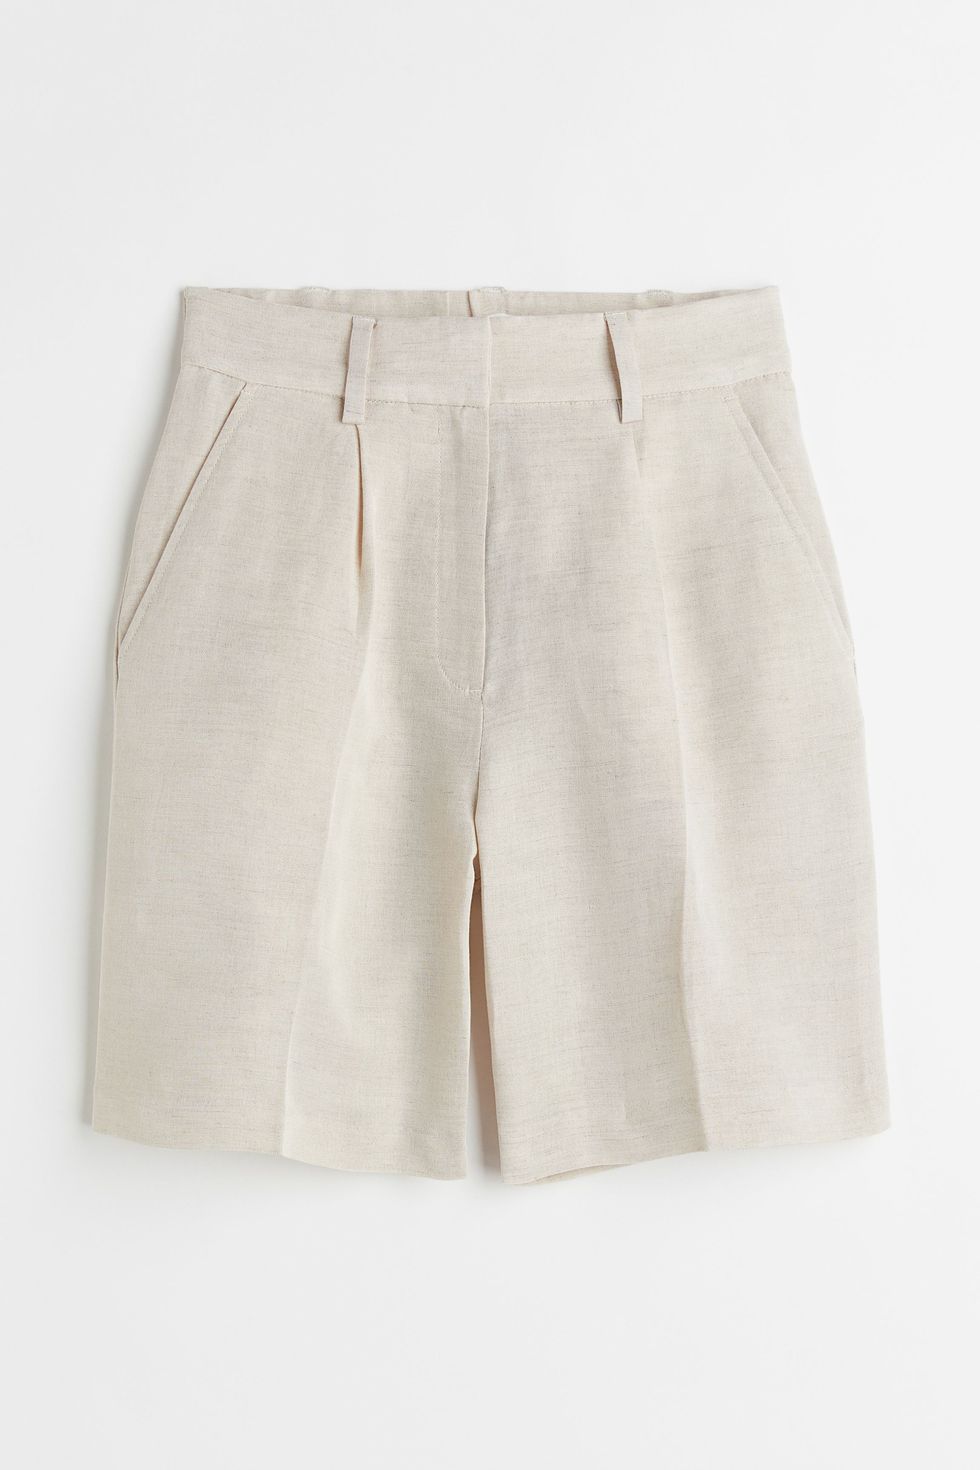 H&M Linen-Blend Bermuda Shorts